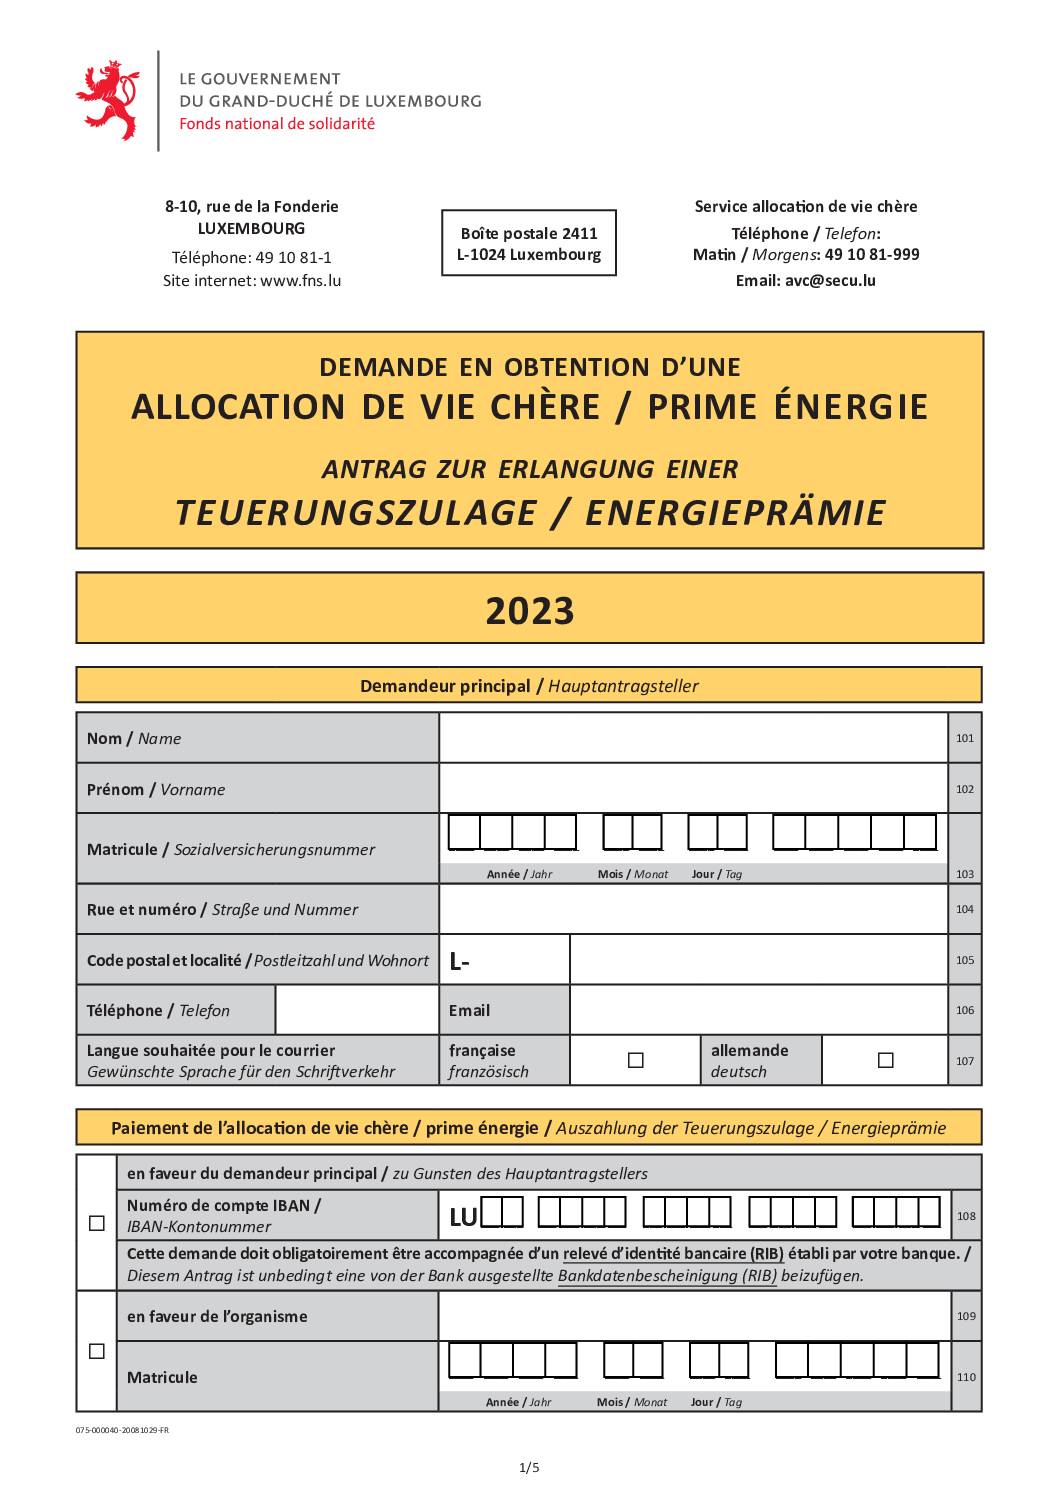 Allocation de vie chère / Prime Energie - Teuerungszulage / Energieprämie